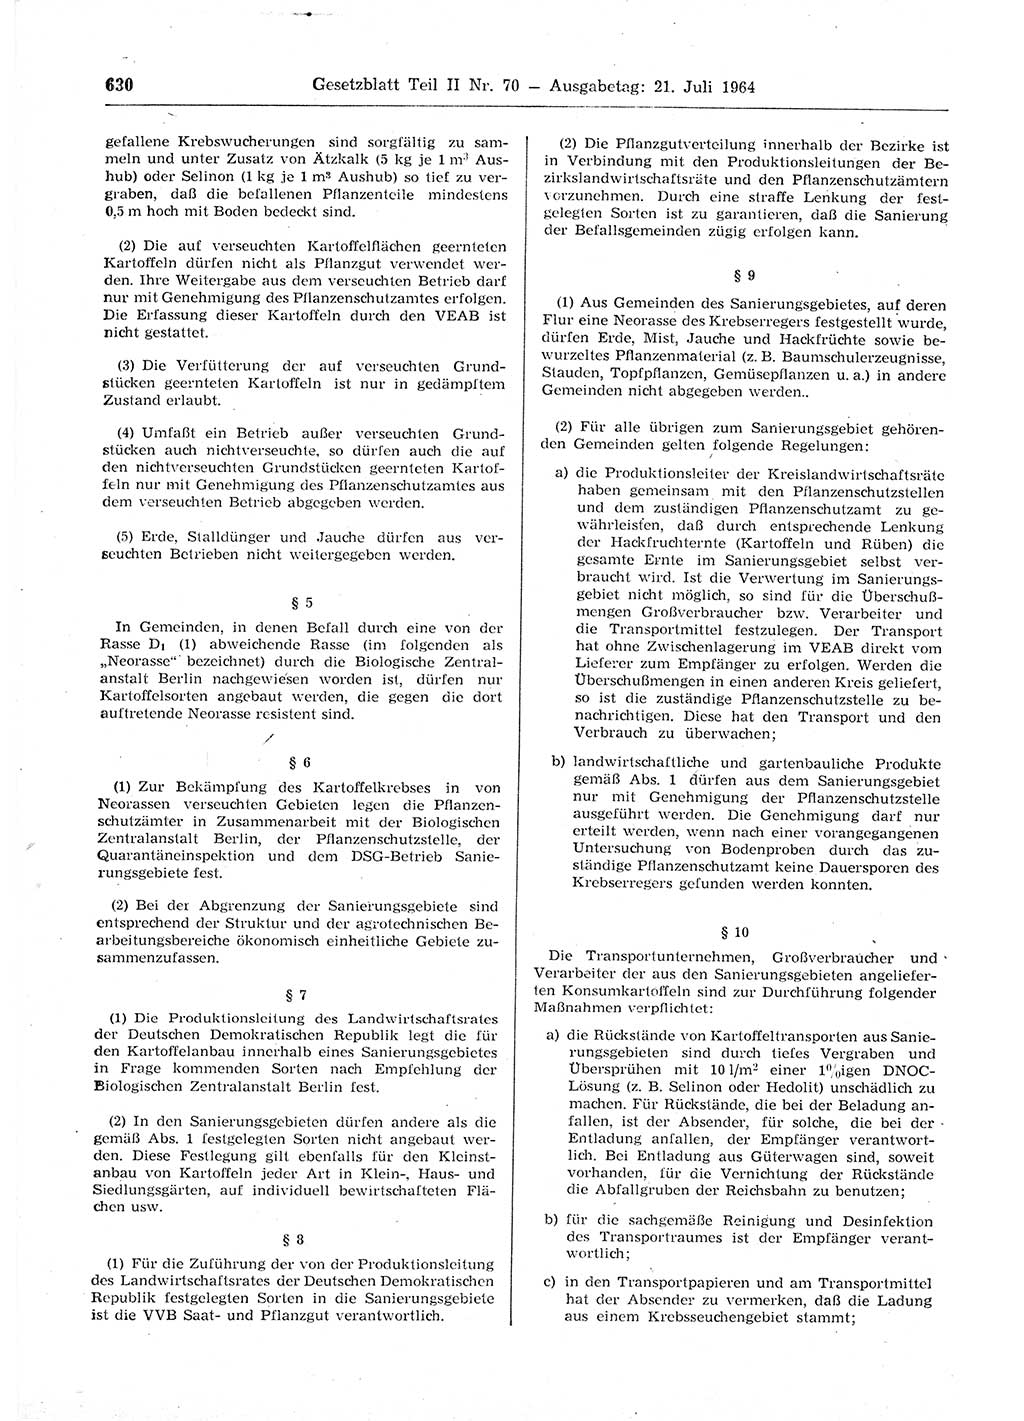 Gesetzblatt (GBl.) der Deutschen Demokratischen Republik (DDR) Teil ⅠⅠ 1964, Seite 630 (GBl. DDR ⅠⅠ 1964, S. 630)